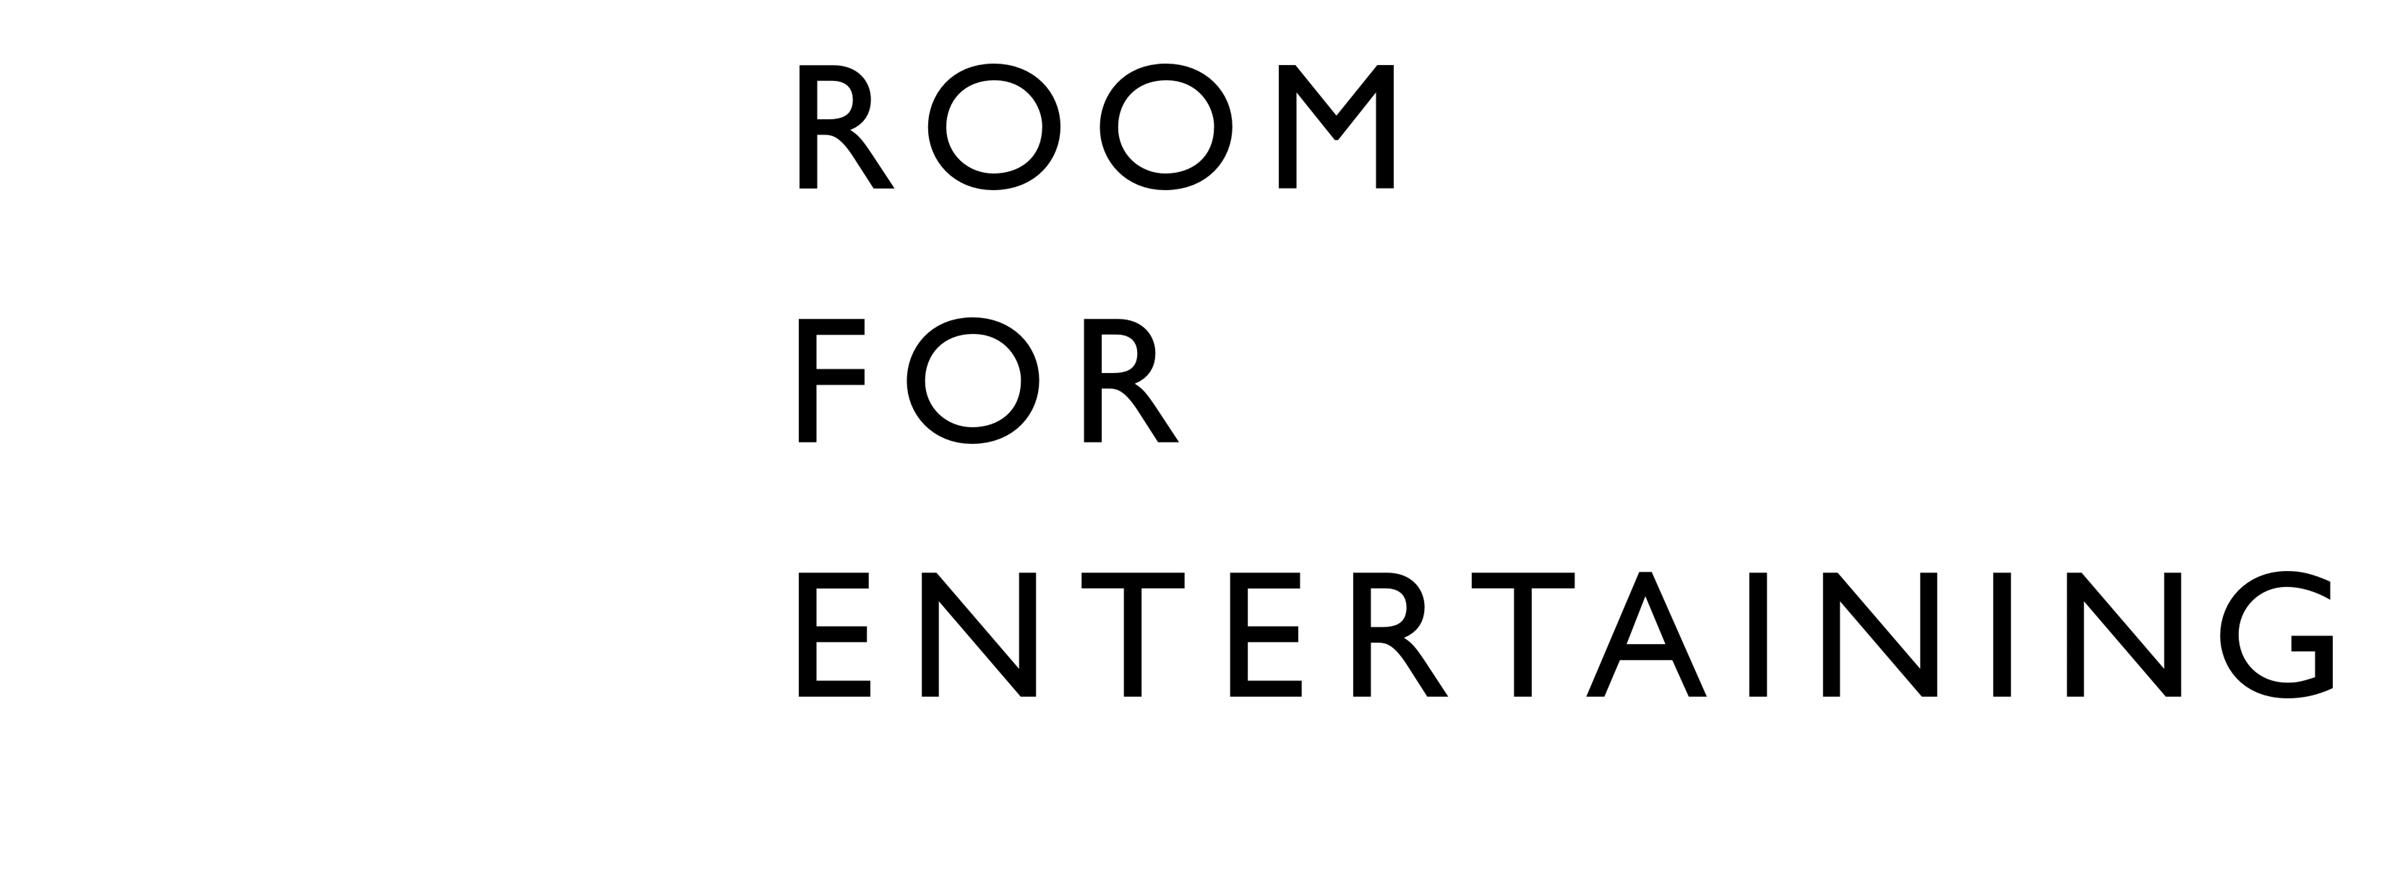 Room for Living - Room for Entertaining